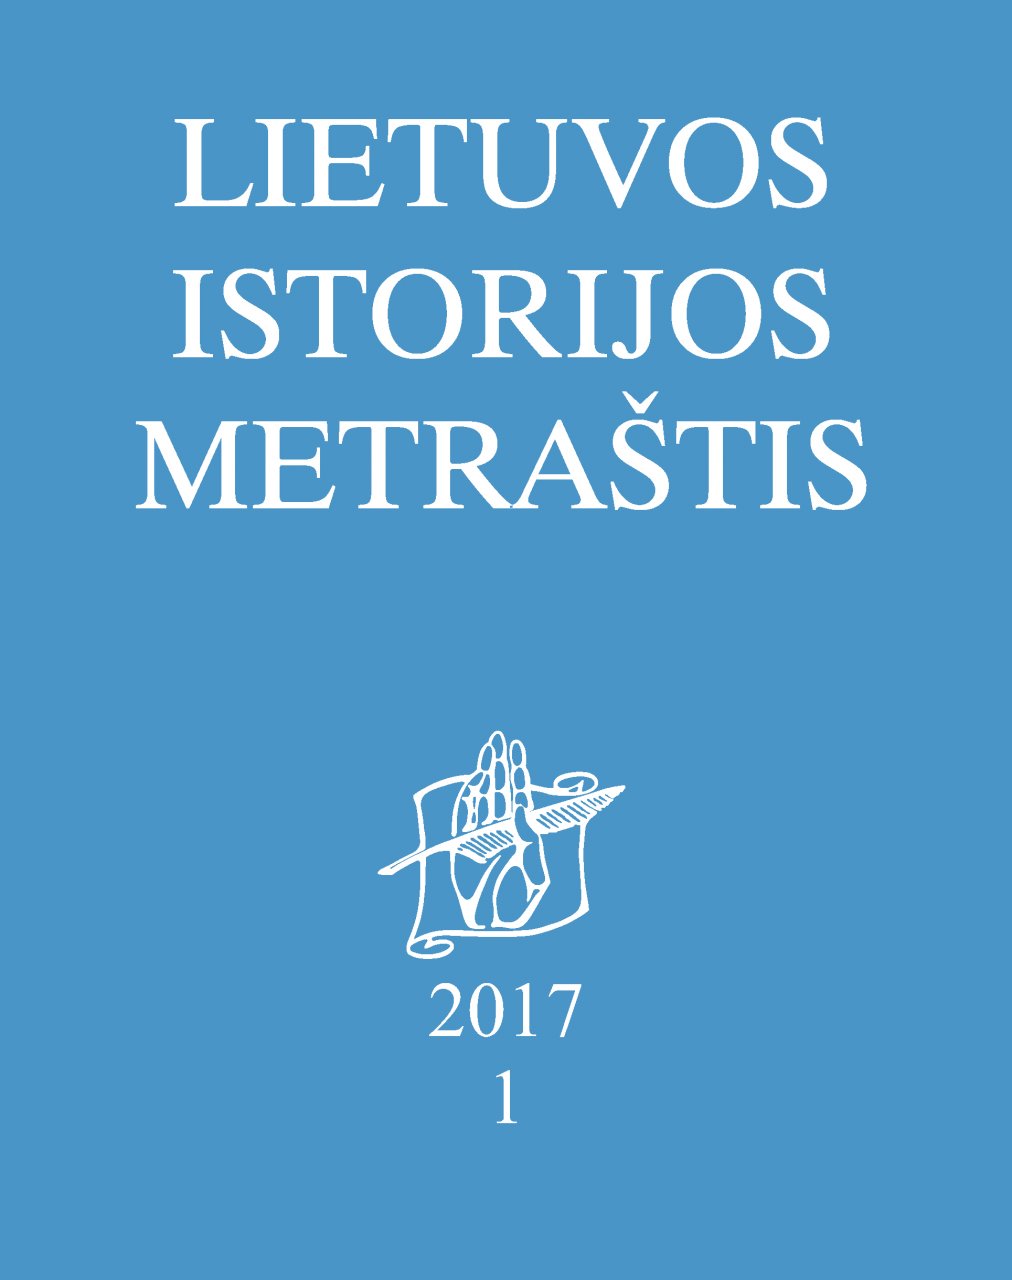 Lietuvos istorijos metraštis 2017 metai 1